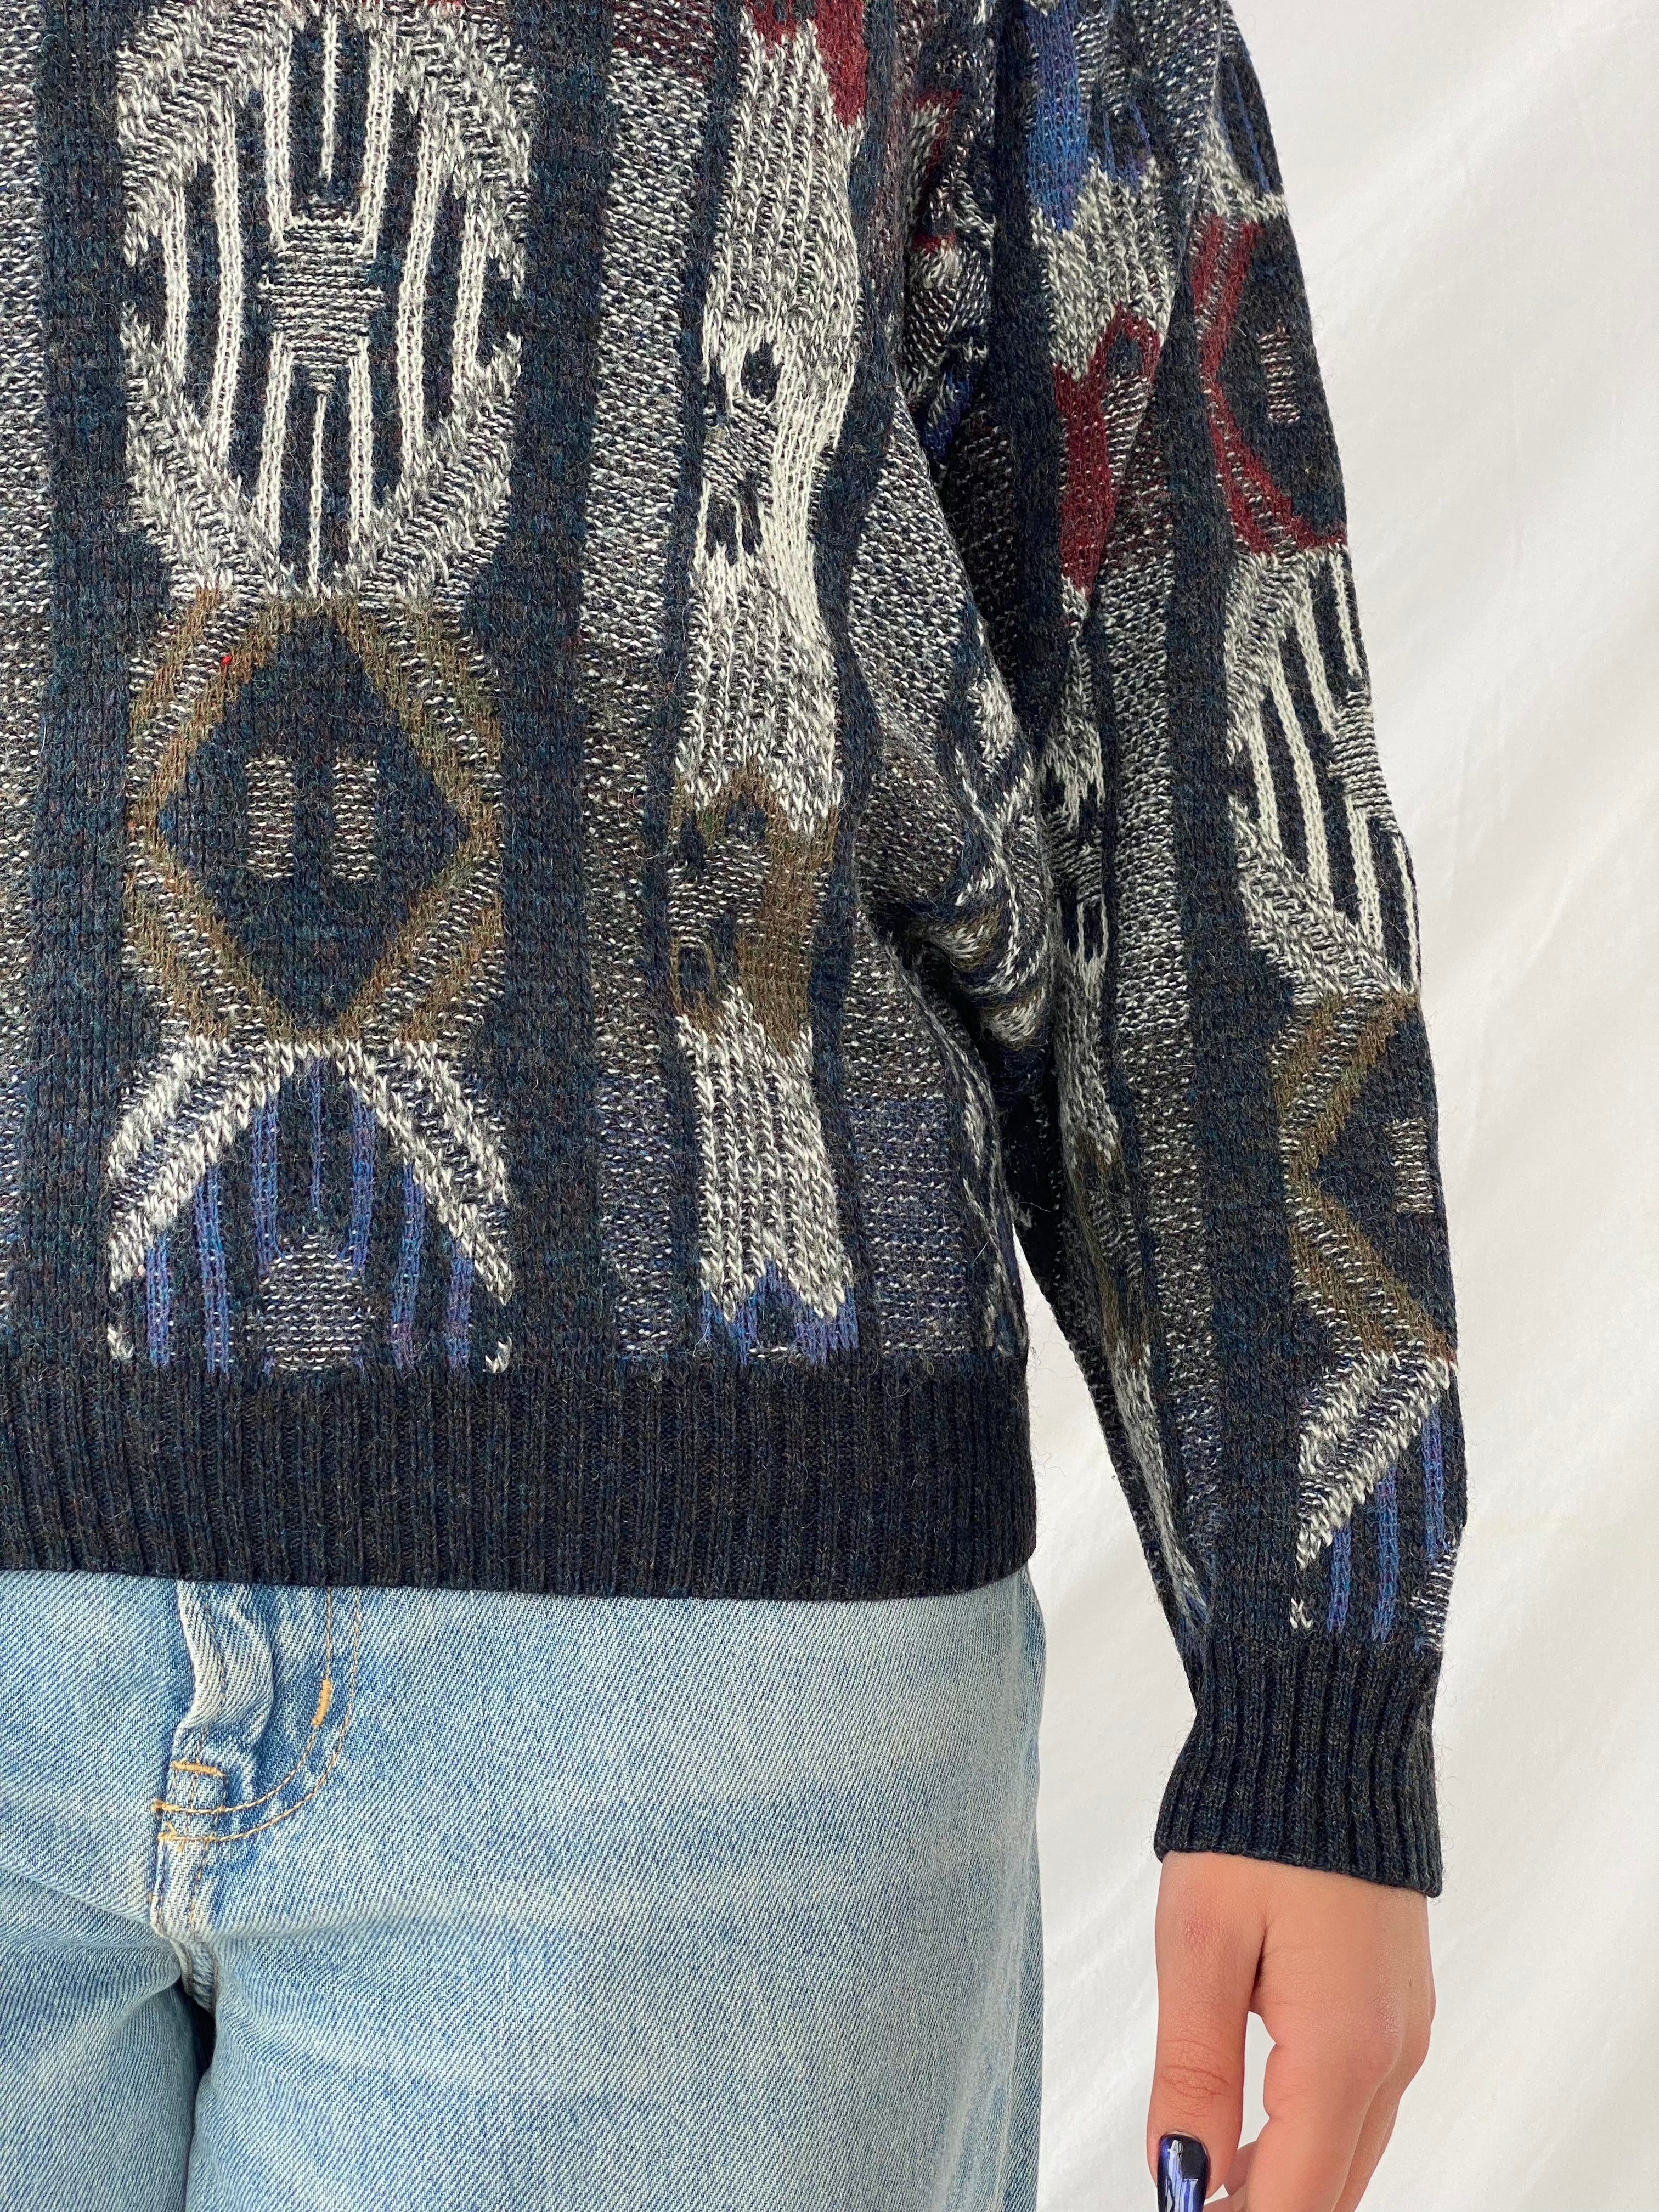 Vintage Knitted Sweater - Balagan Vintage Sweater 90s, knitted sweater, outerwear, sweater